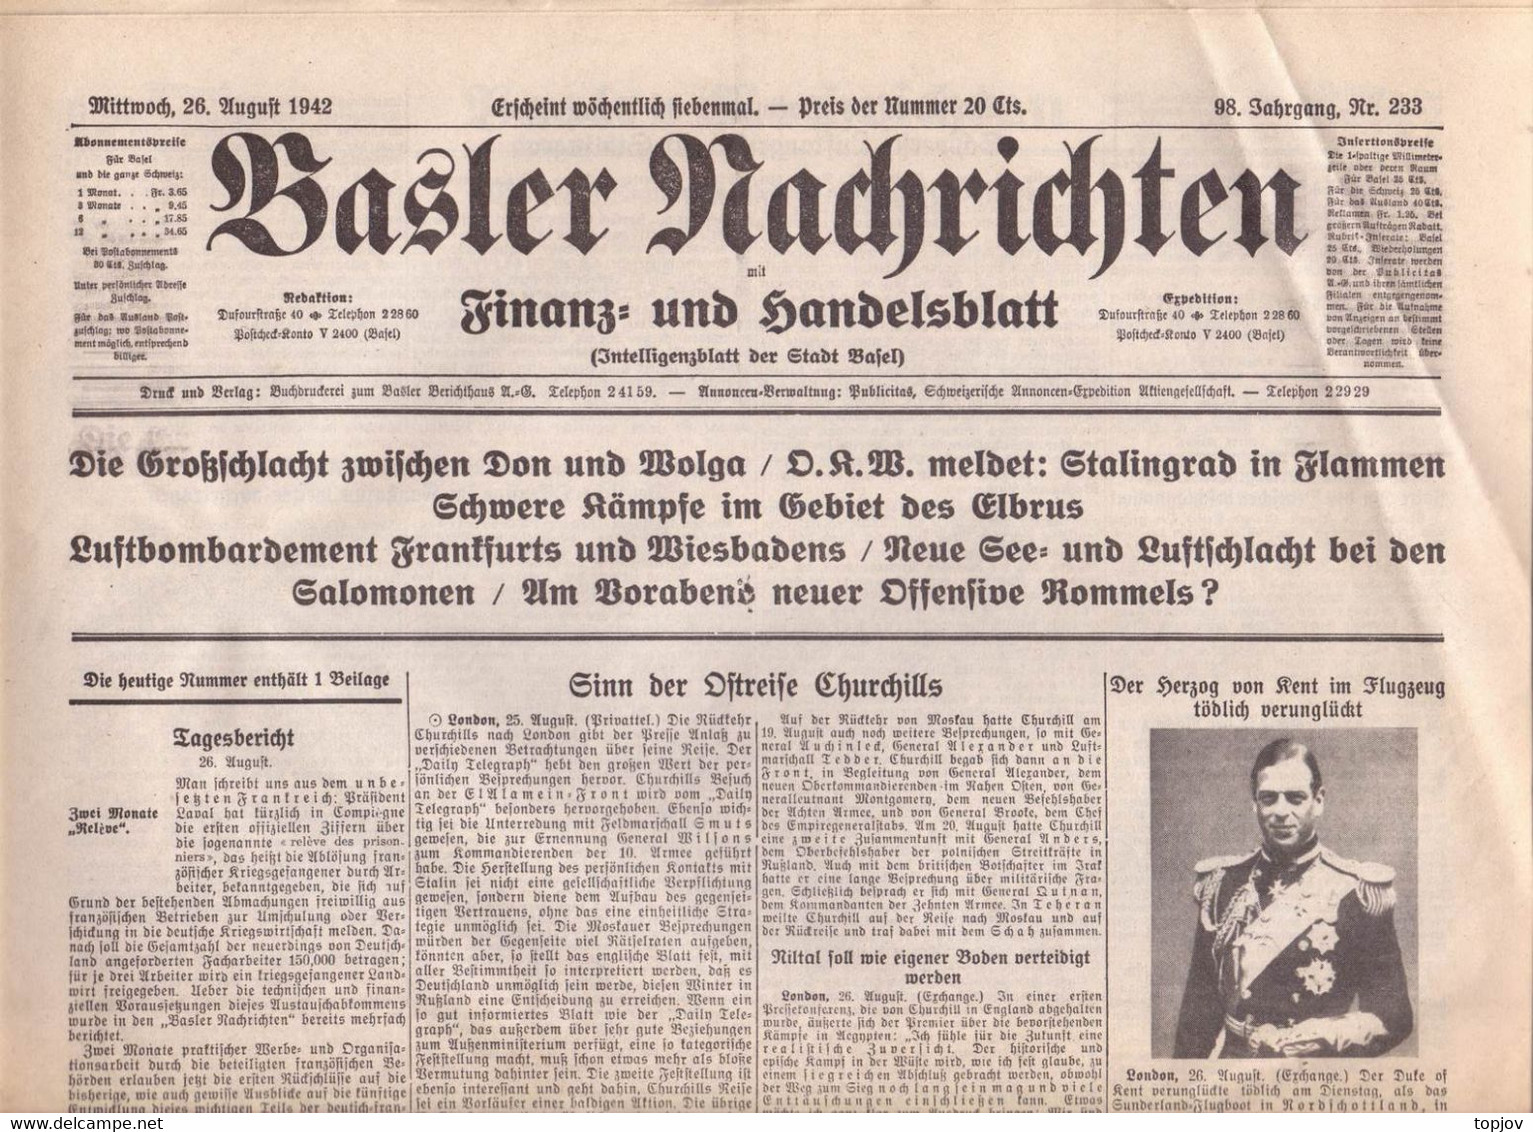 SCHWEIZ -  BASLER  NACHRICHTEN  ZEITUNG  - KRIEG - BASEL  - Komplette Zeitung - 1942 - Allgemeine Literatur